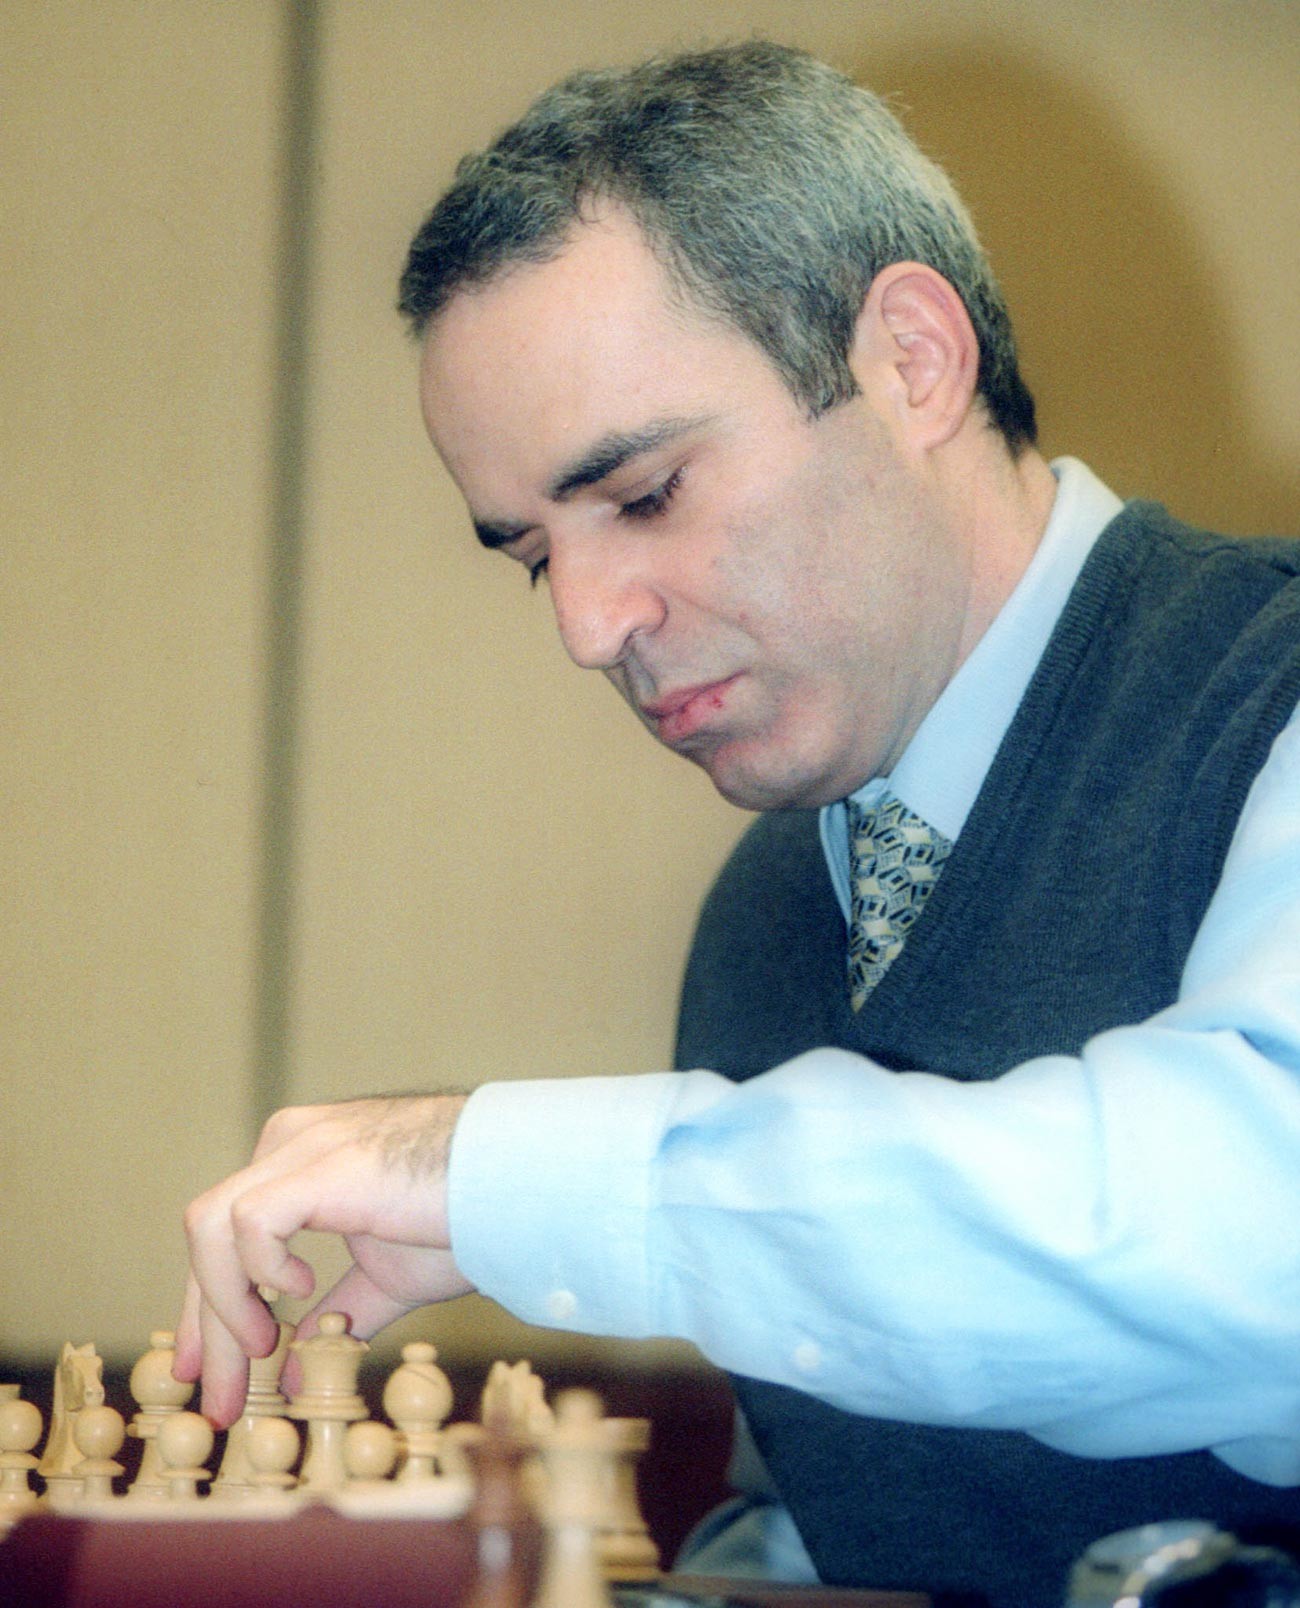 Руски шаховски велемајстор Гари Каспаров